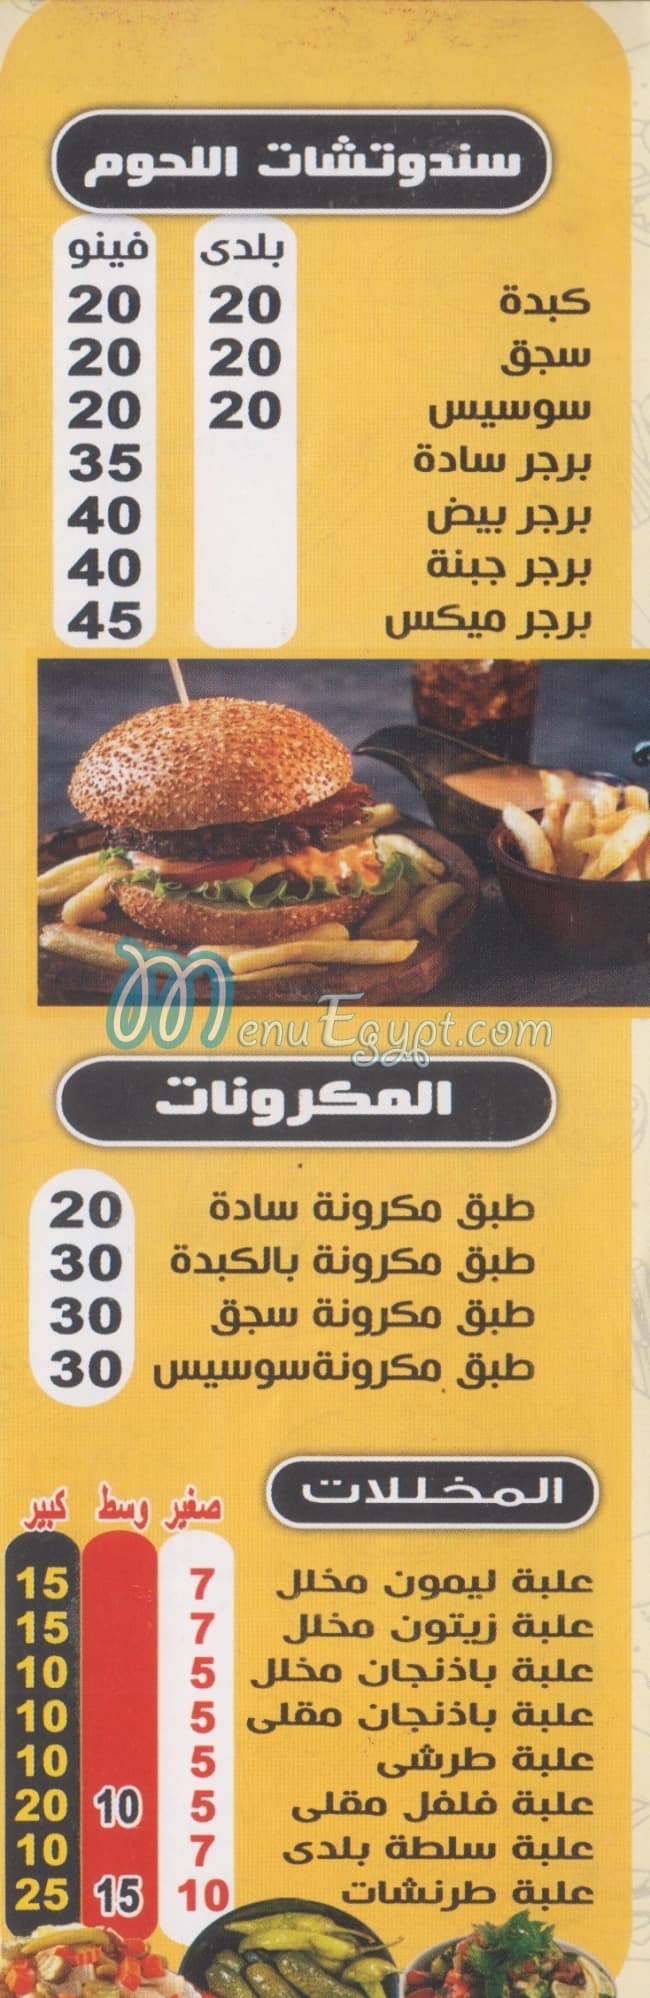 Abo El 3ez El Shabrawy Restaurant menu